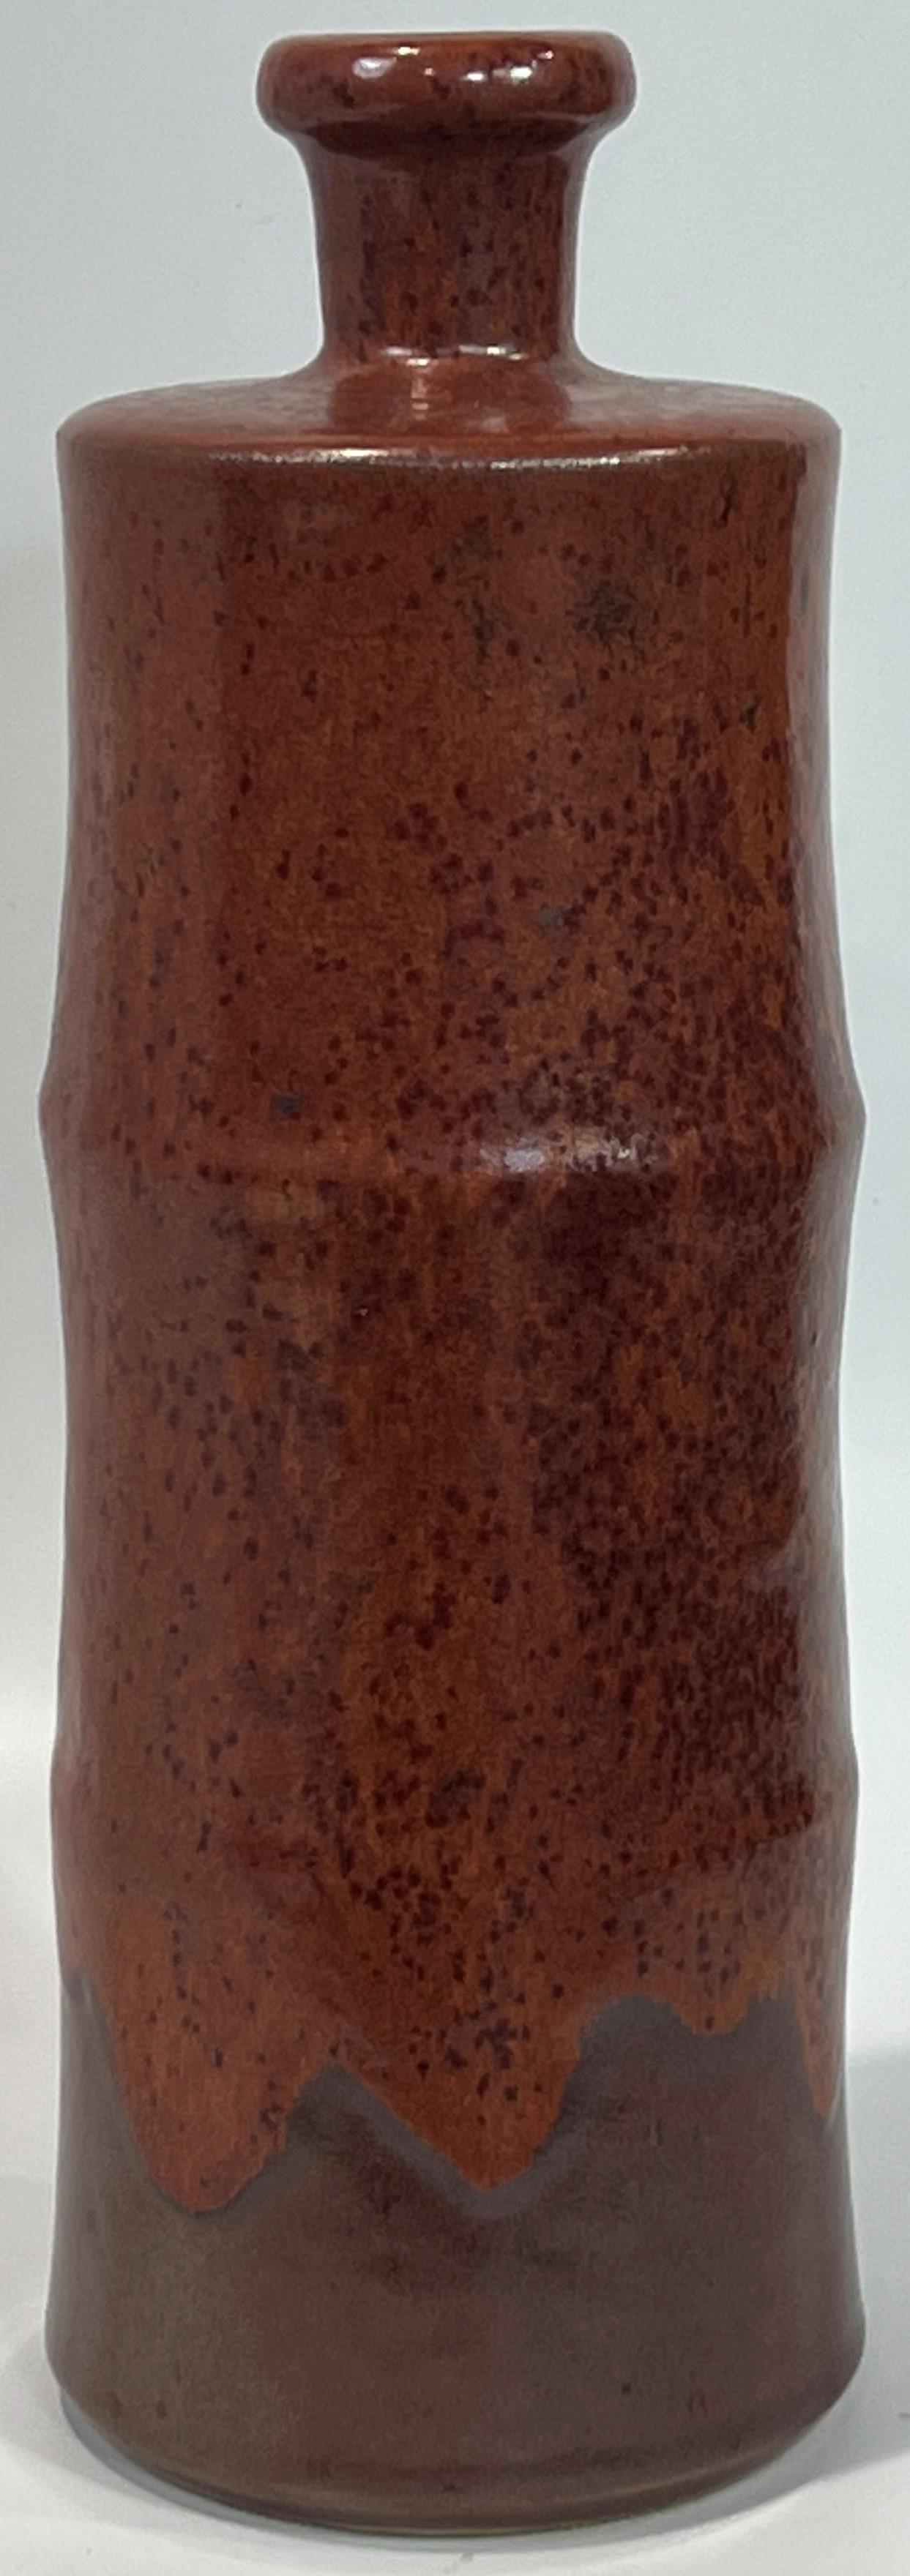 Pottery Horst Kerstan Bottle Vase Large Fantastic Brown Micro-Crystalline over Brown